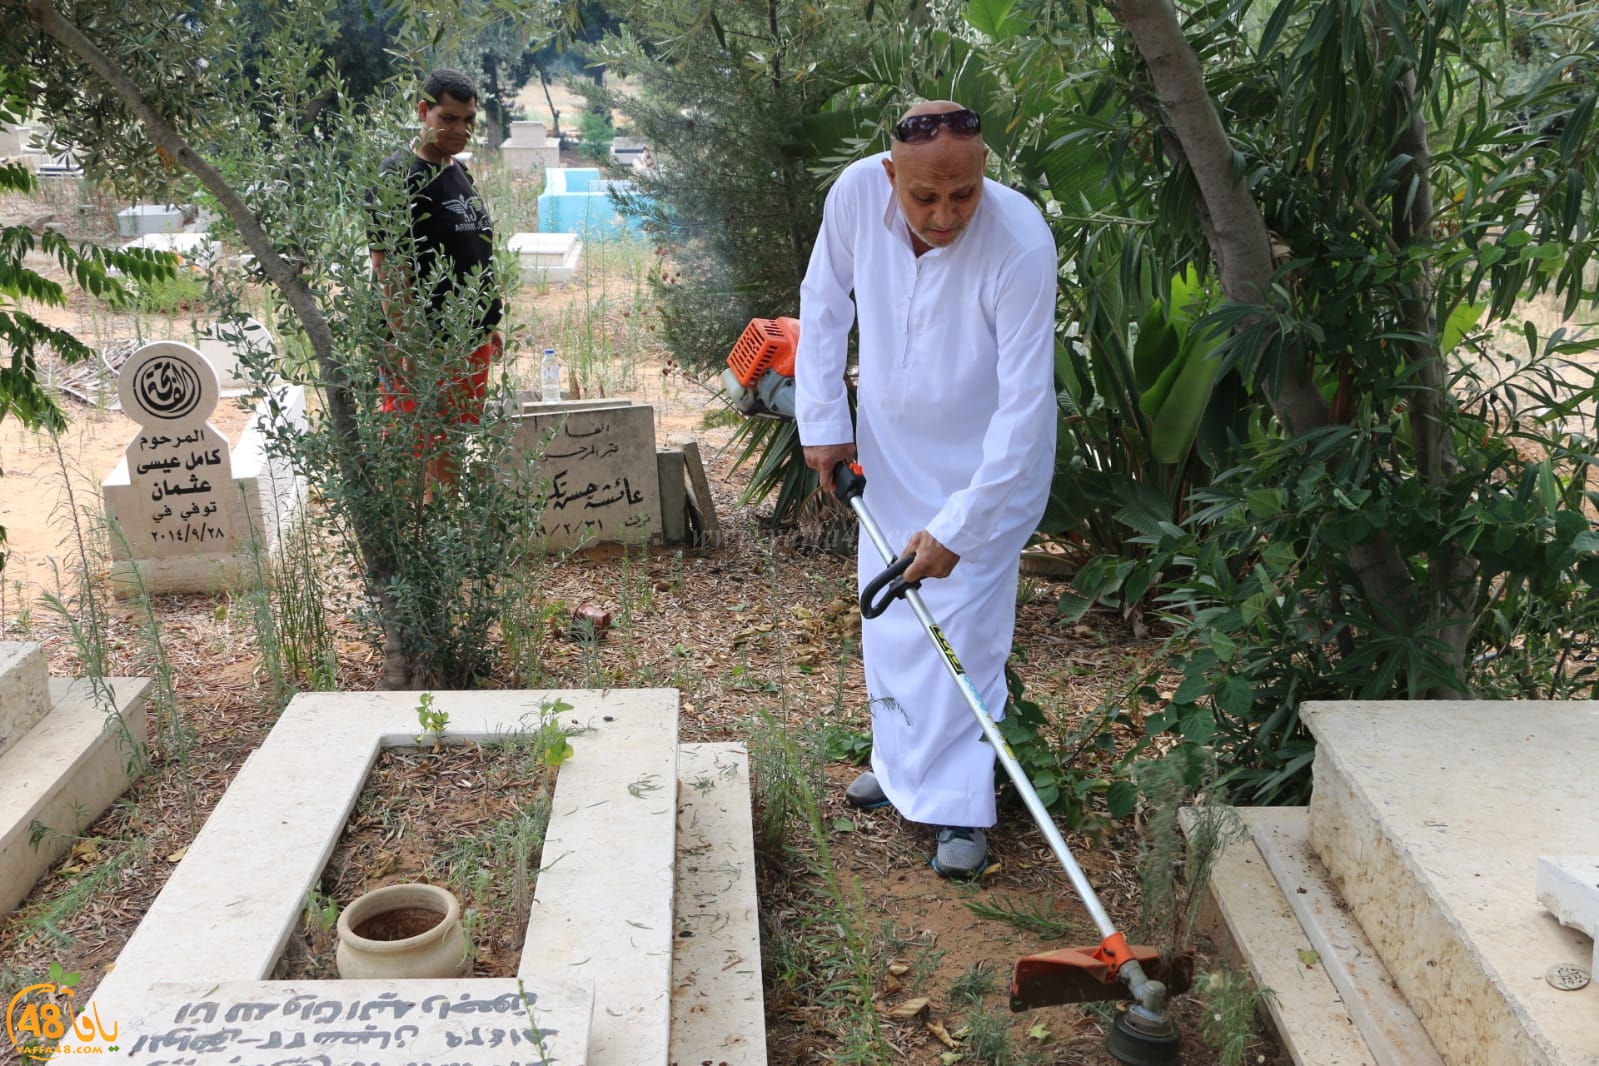  بالفيديو: لجنة اكرام الميت تُنظم حملتها الشهرية لتنظيف مقبرة طاسو بيافا 